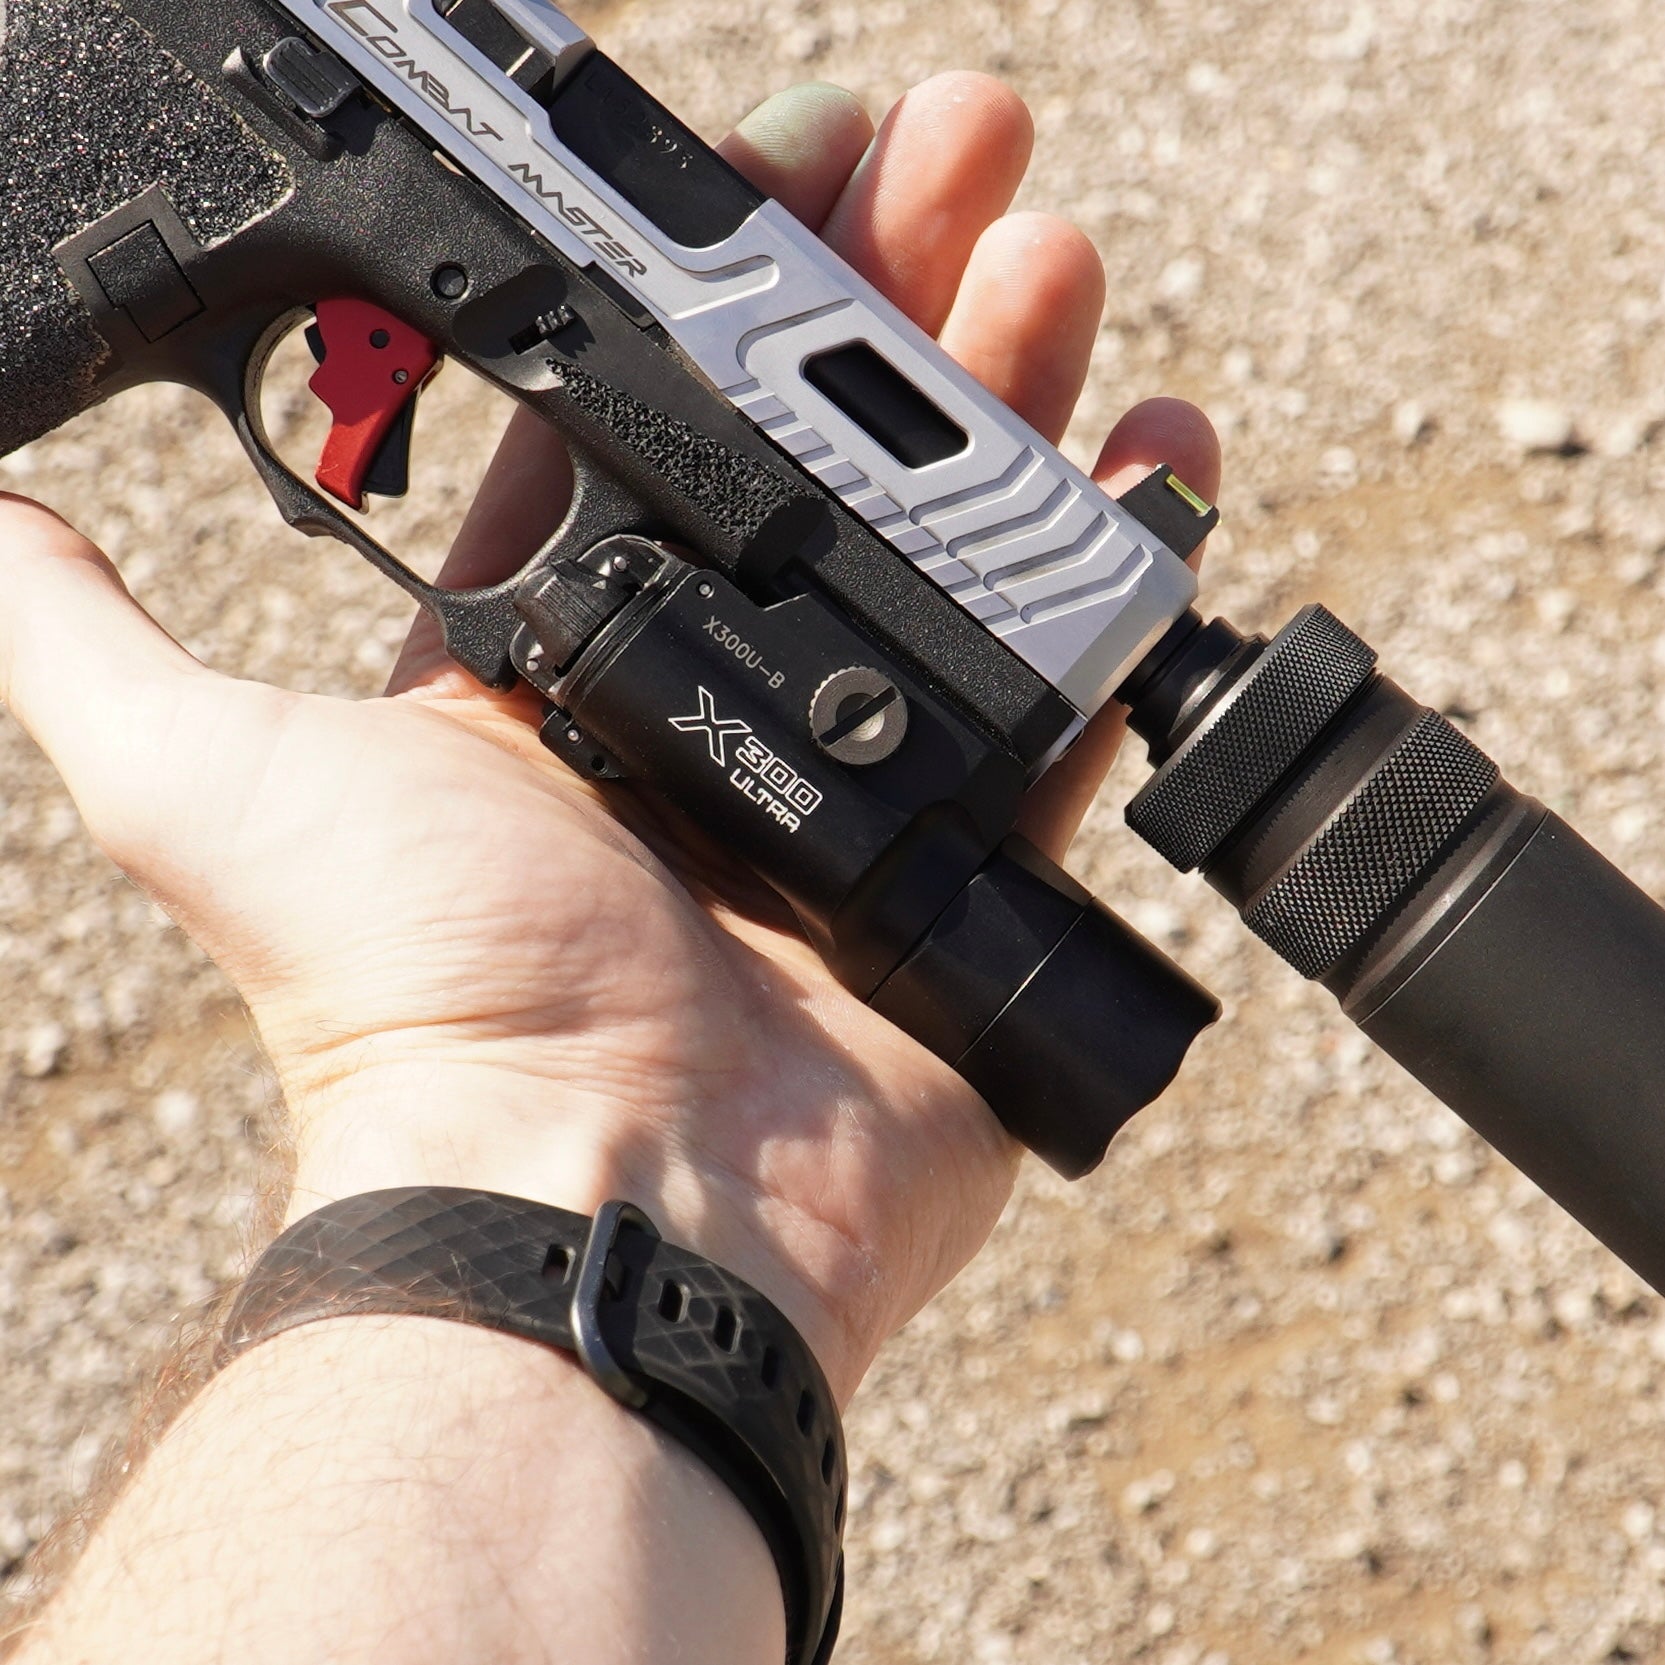 SUREFIRE X300U-A pistol light module 1,000 lumens